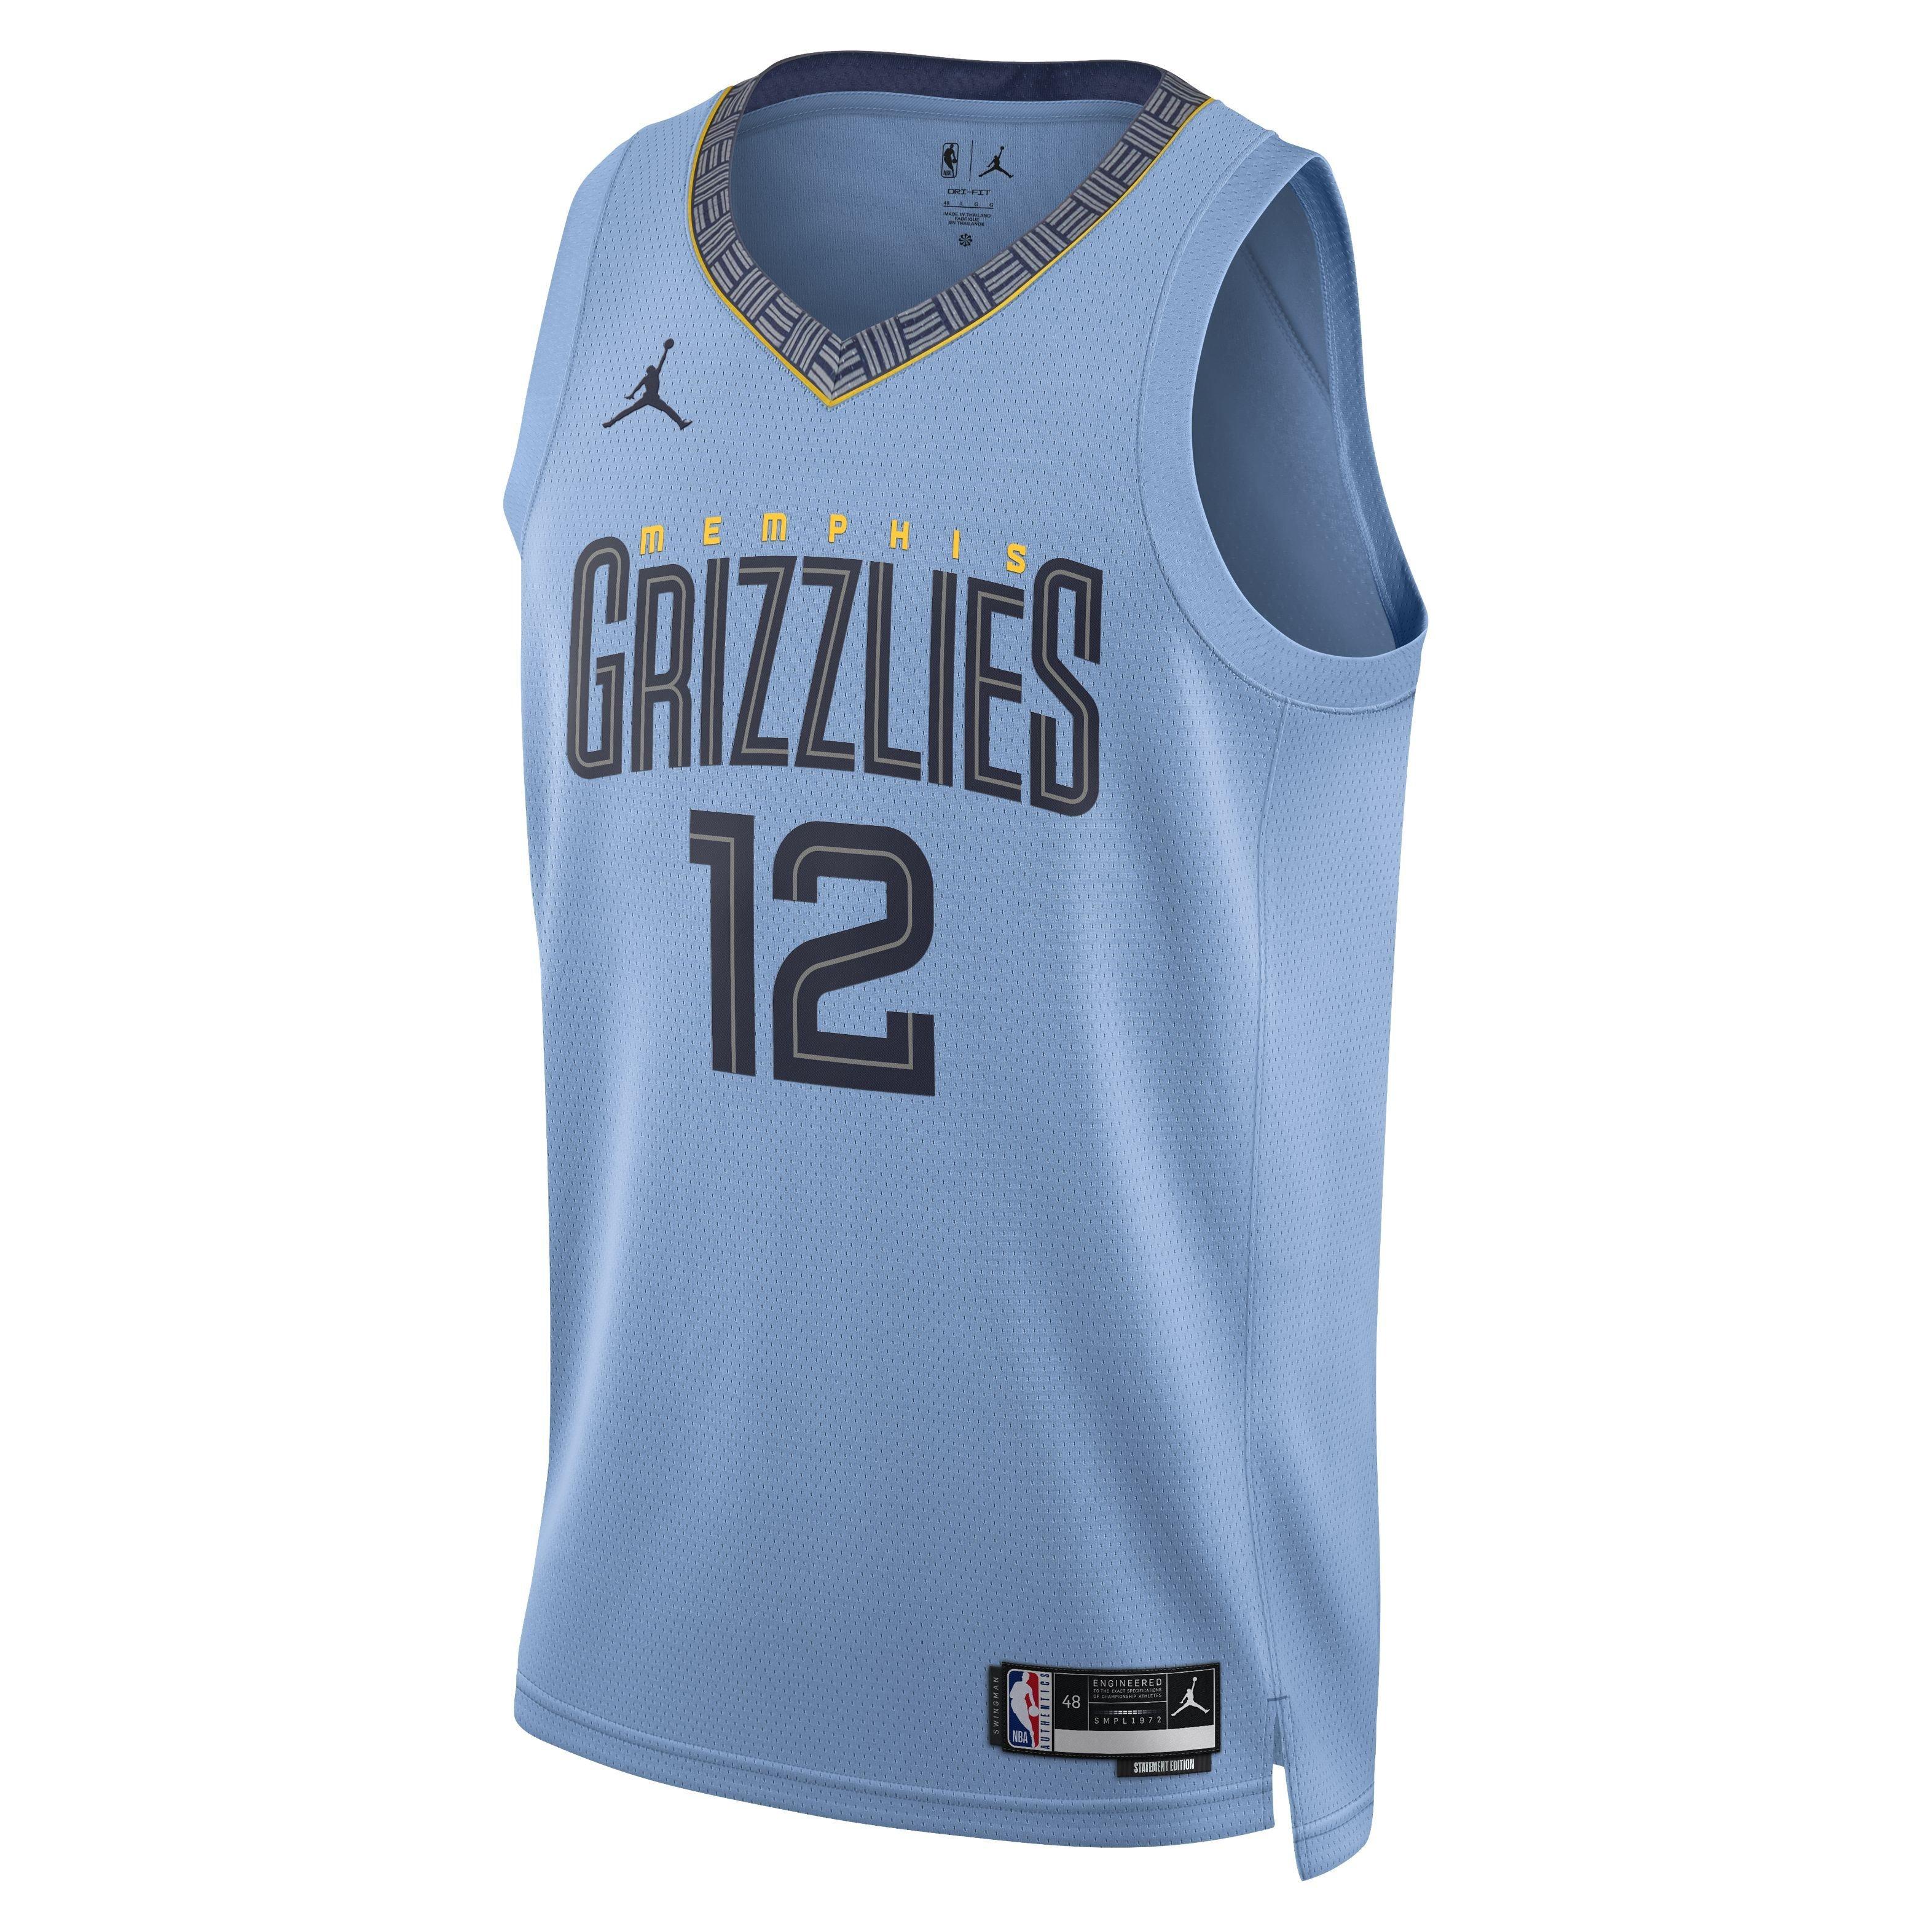 Memphis Grizzlies Team Shirt NBA jersey shirt